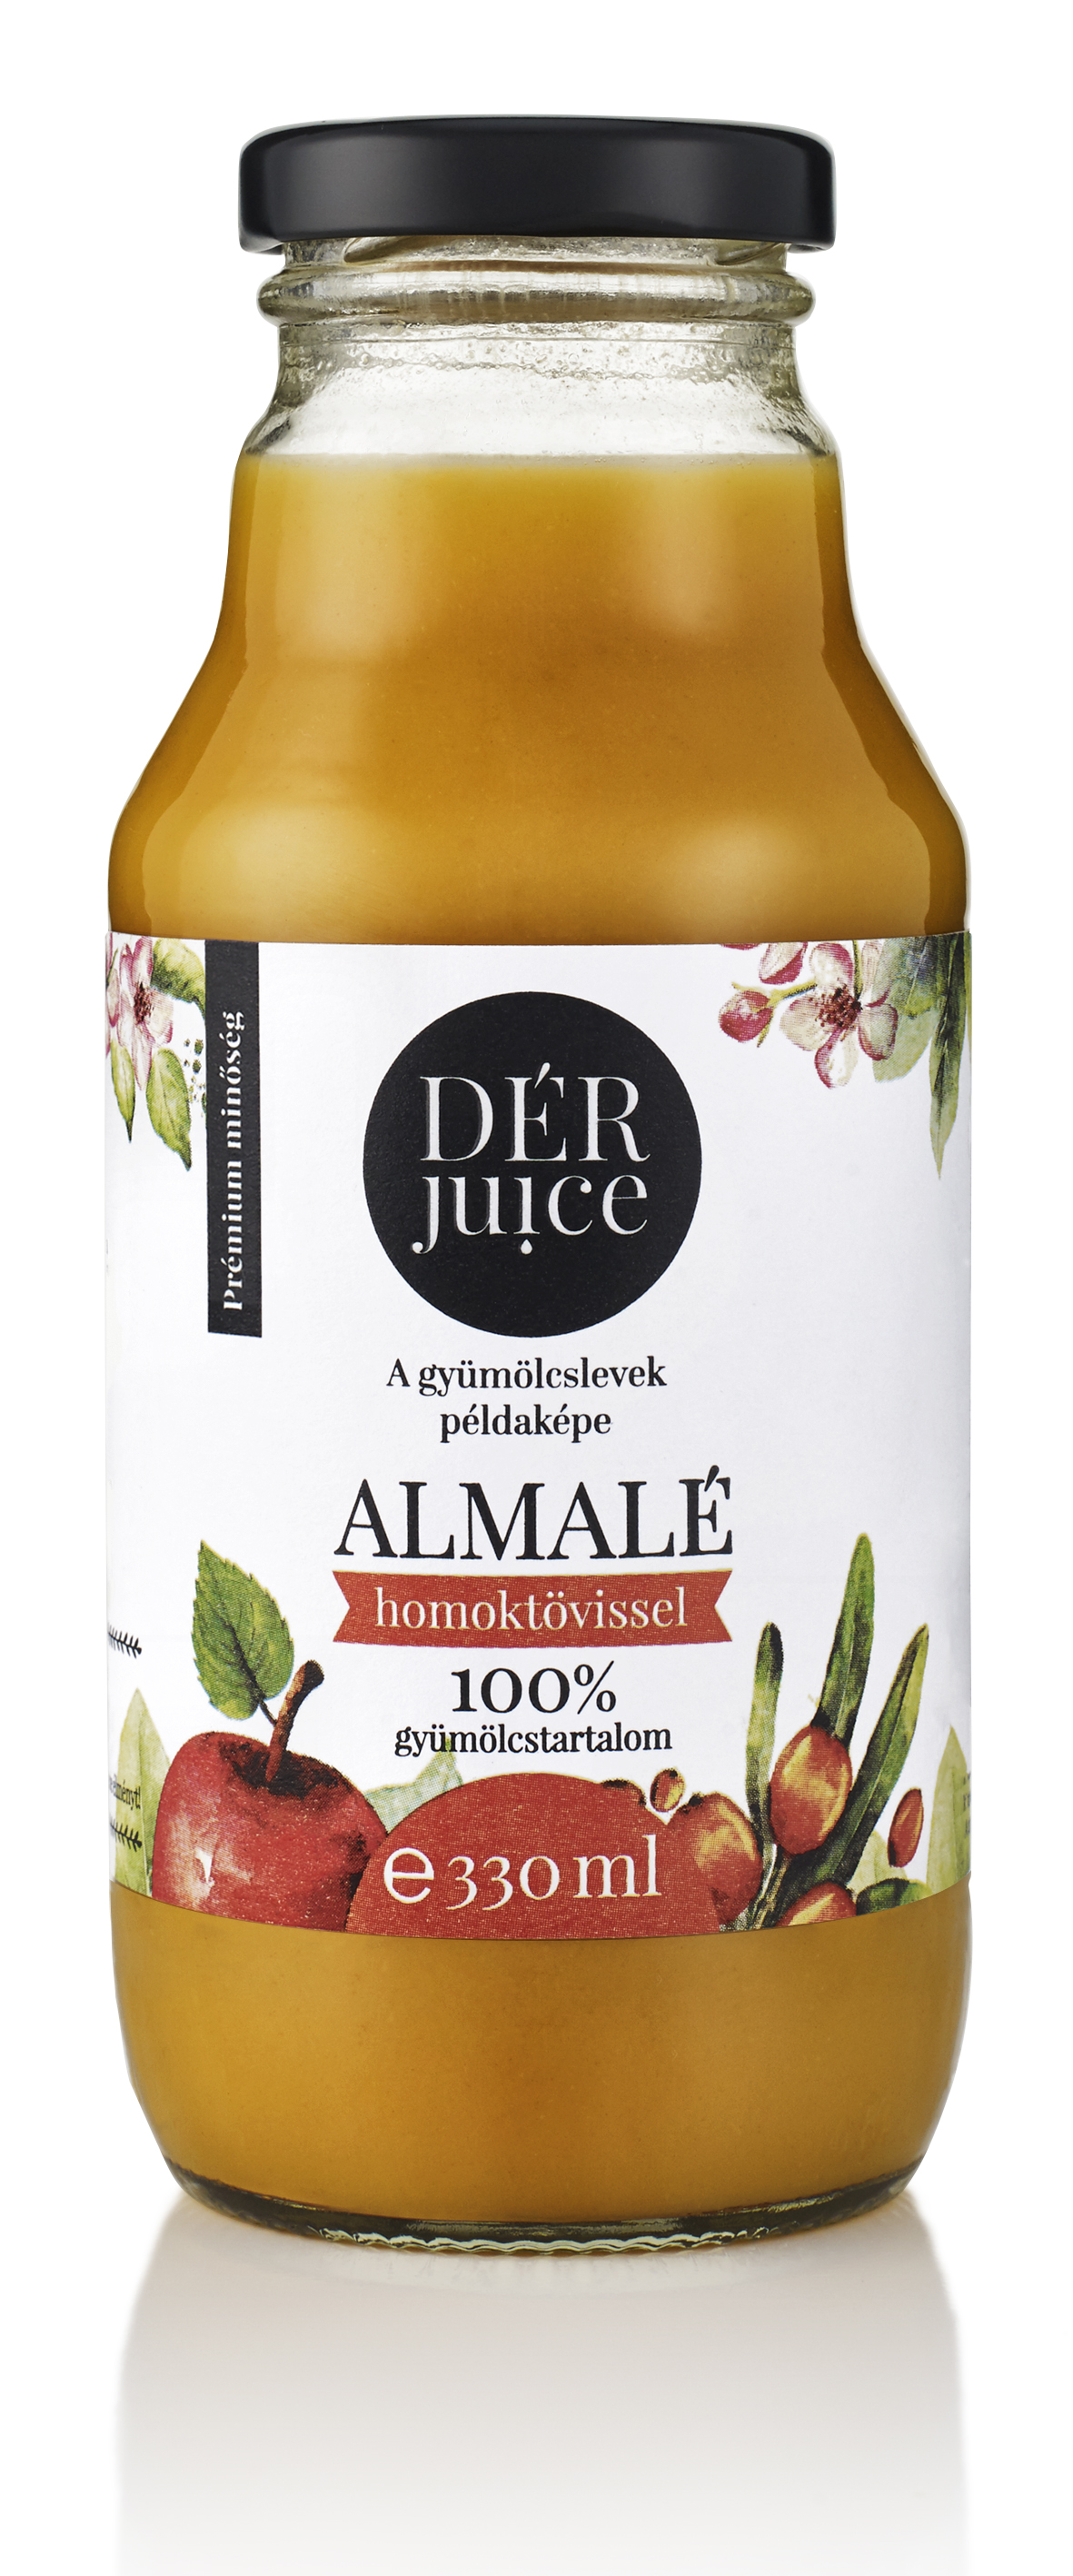 Dér juice almalé homoktövissel 90-10% 330 ml